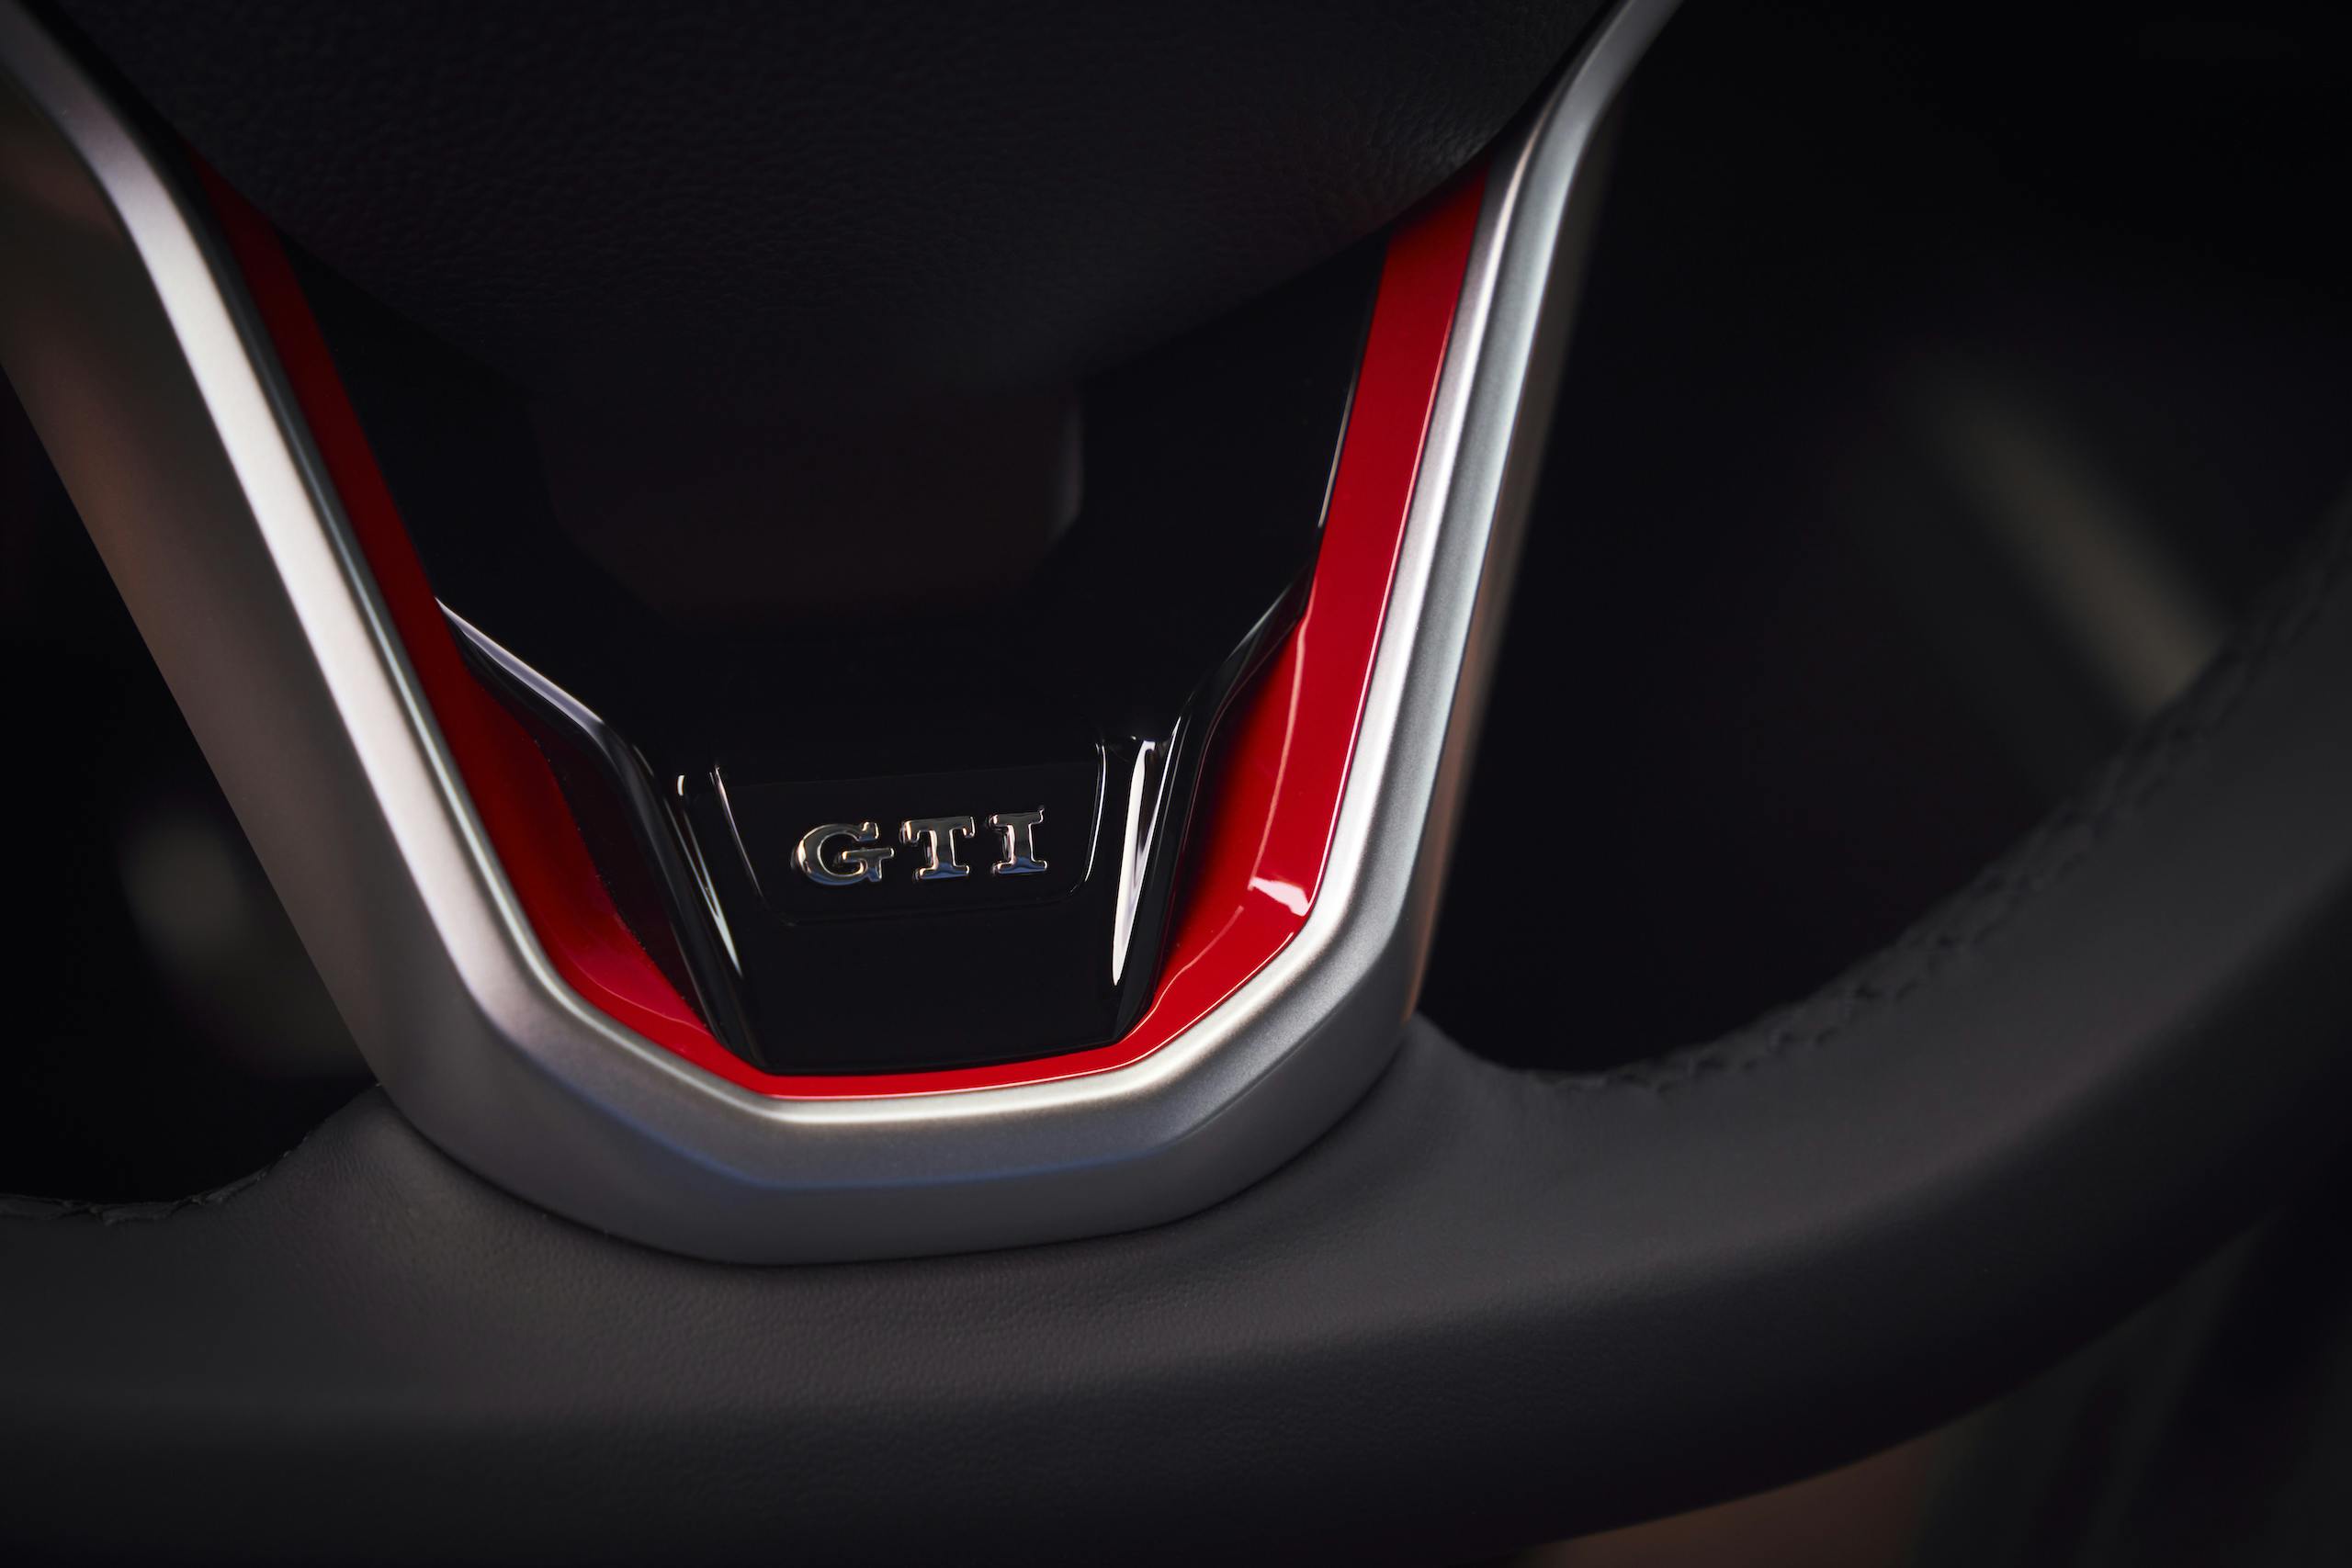 2022 VW Golf GTI interior steering wheel detail